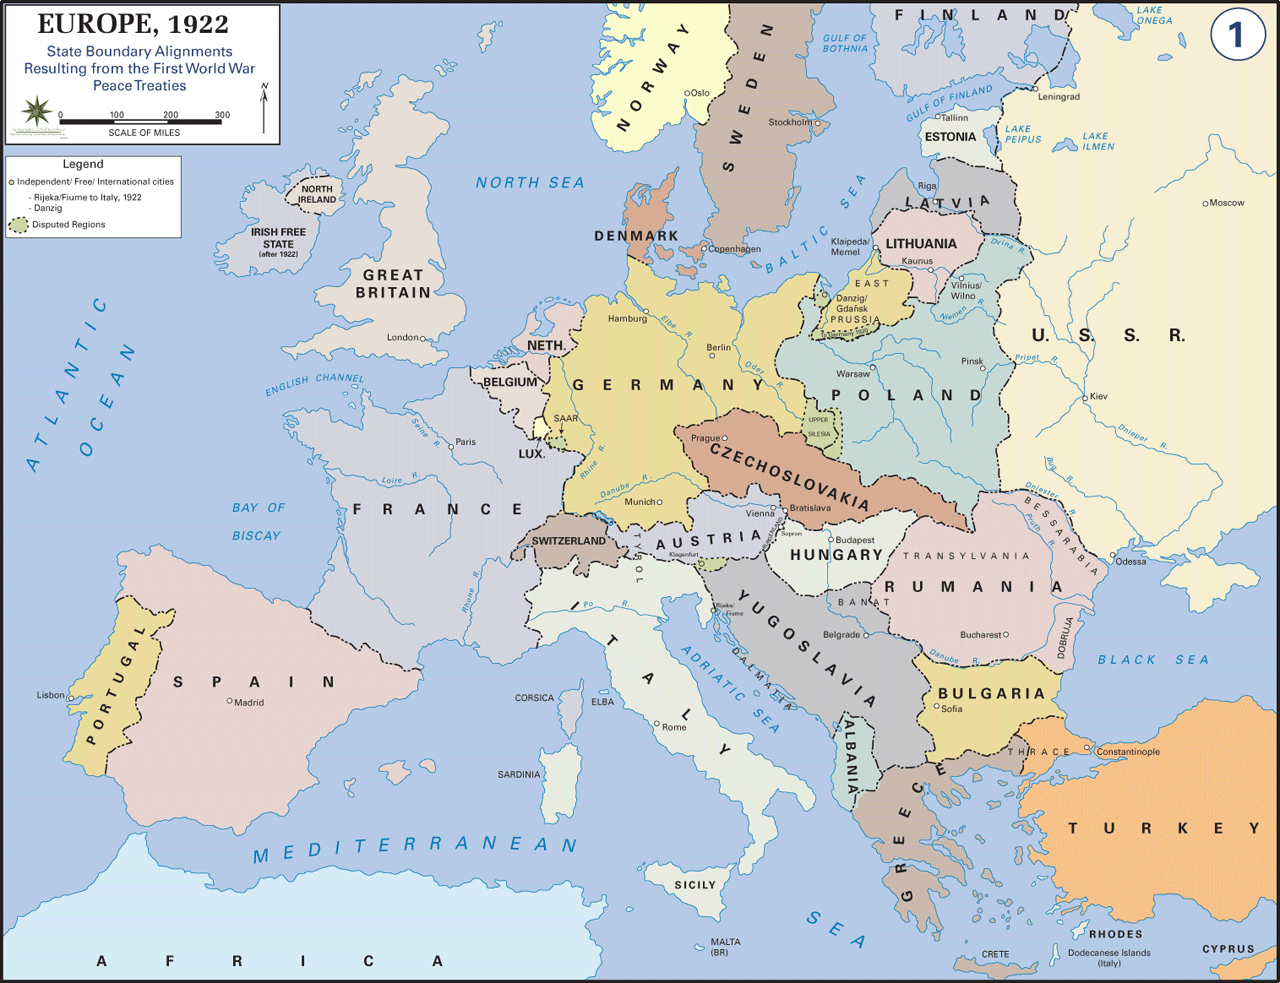 اروپا در 1922 و پس از پایان جنگ